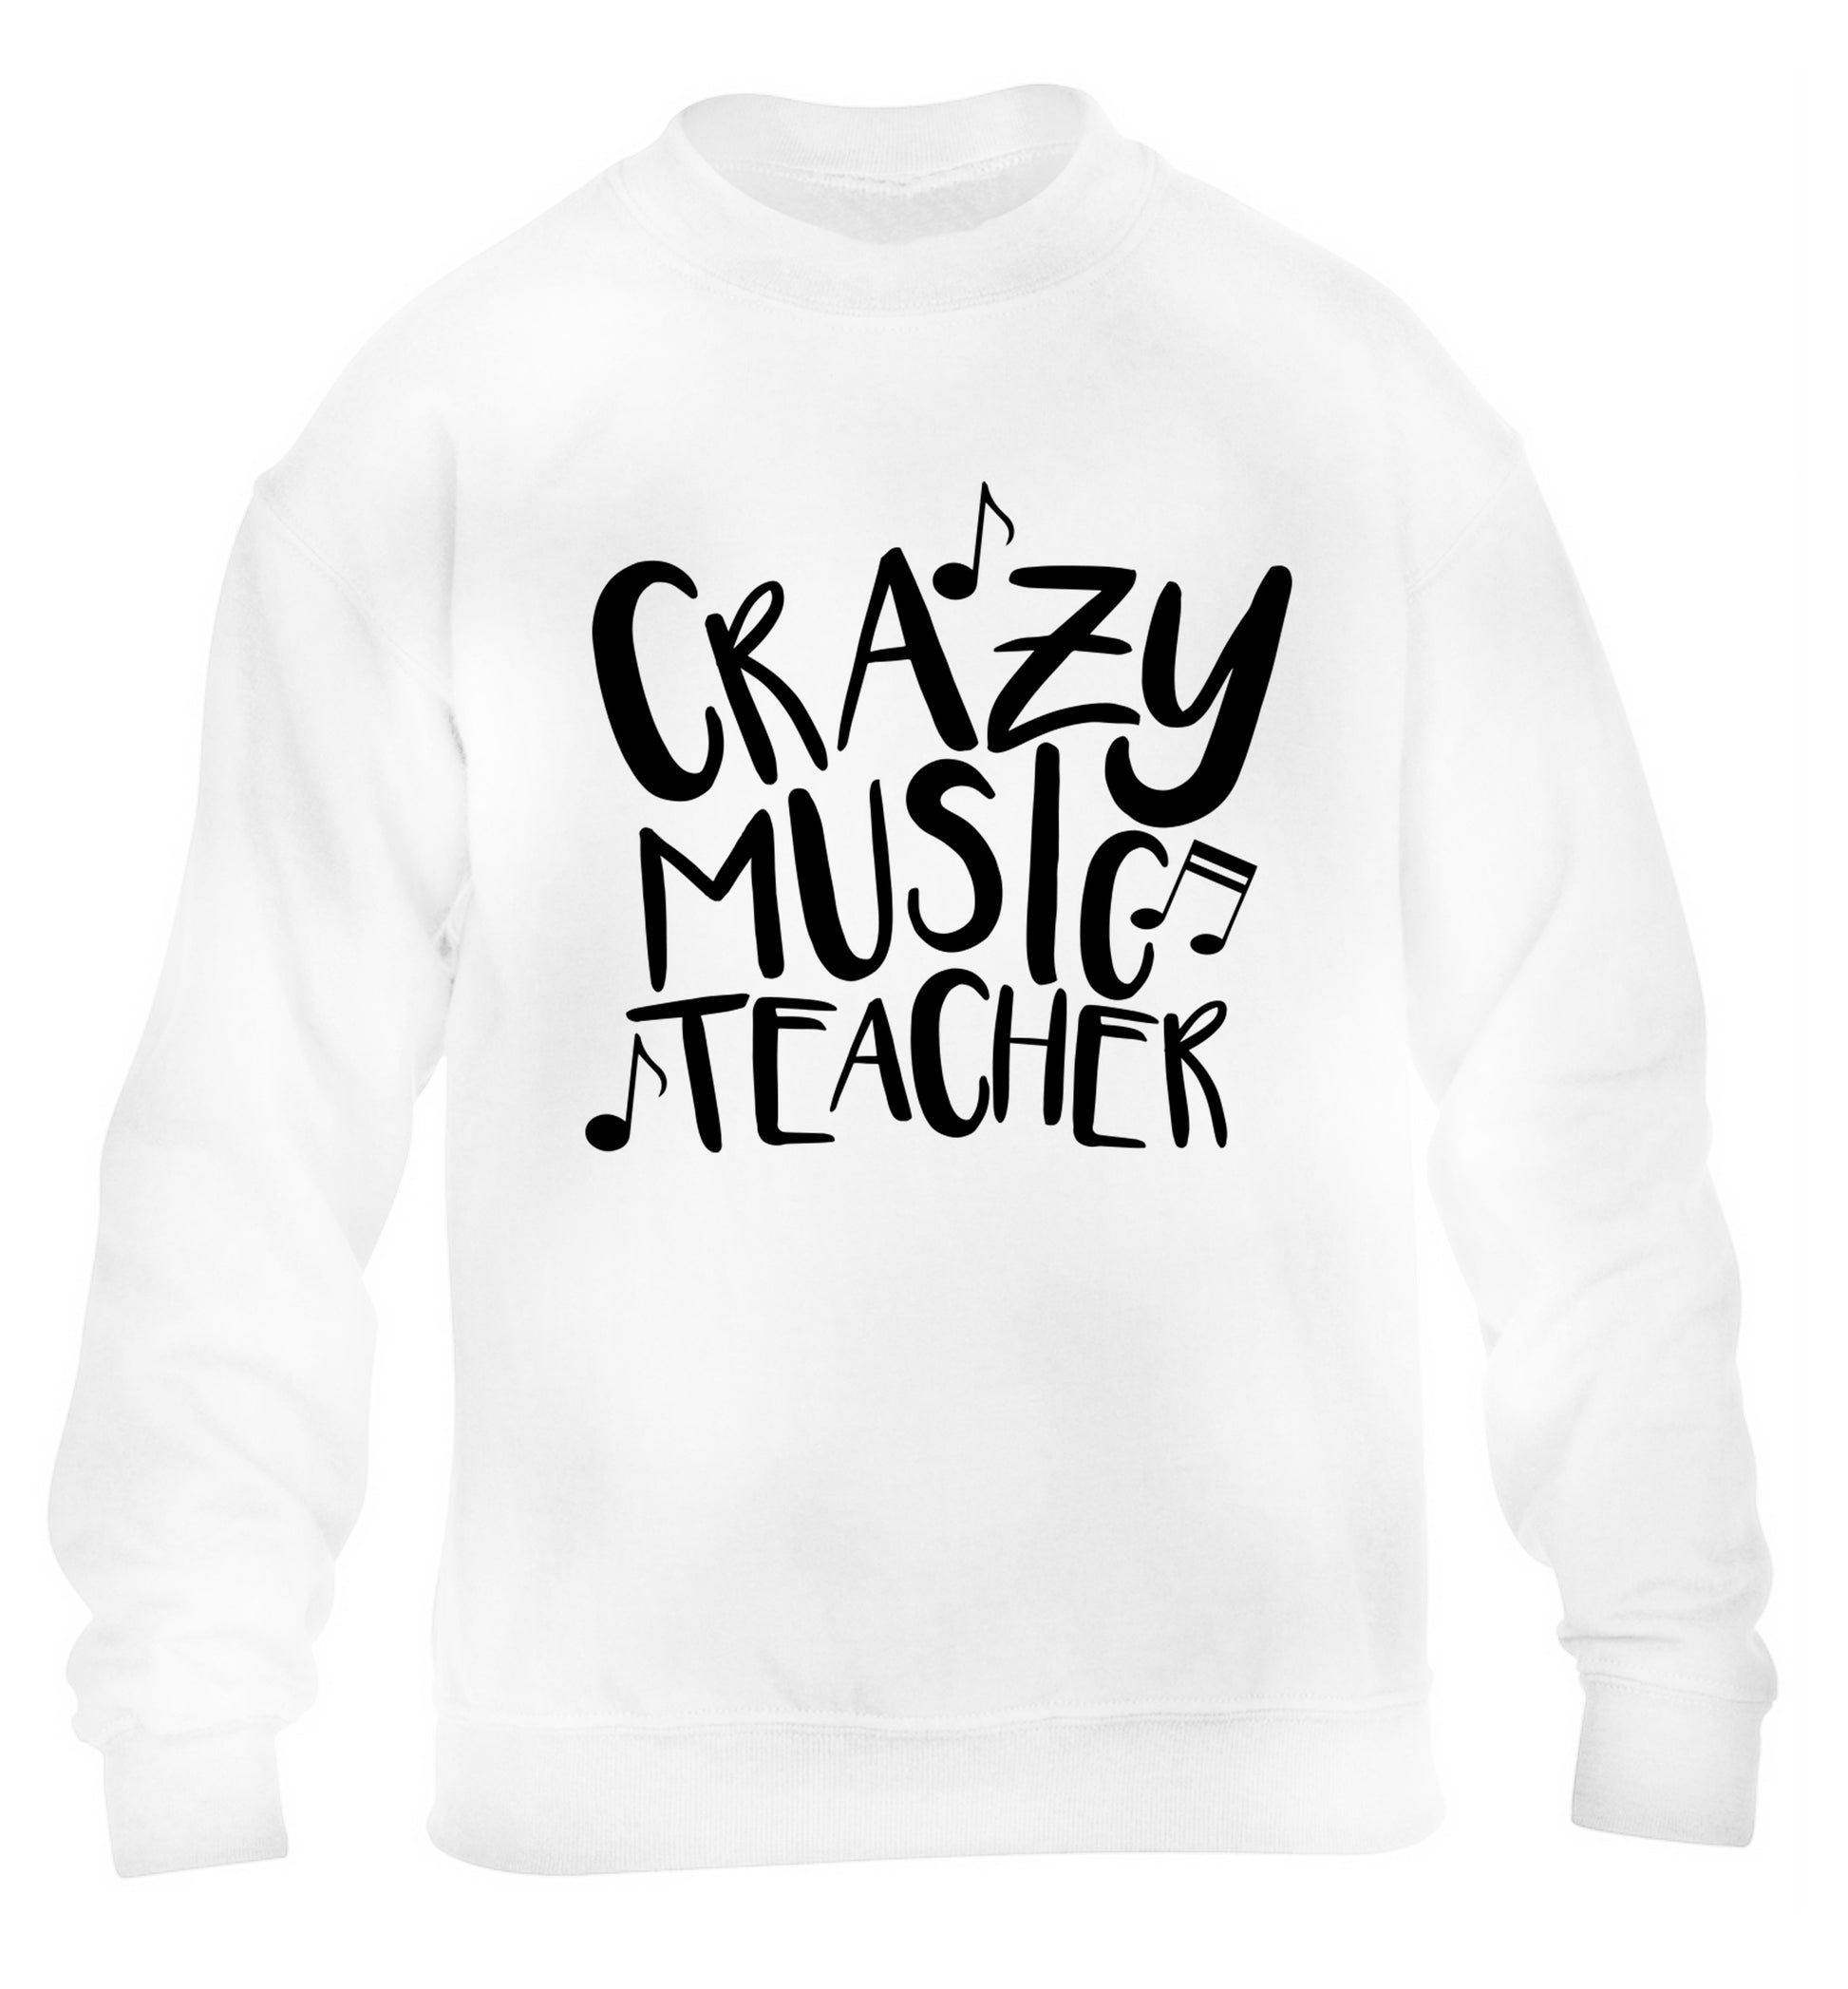 Crazy music teacher children's white sweater 12-13 Years